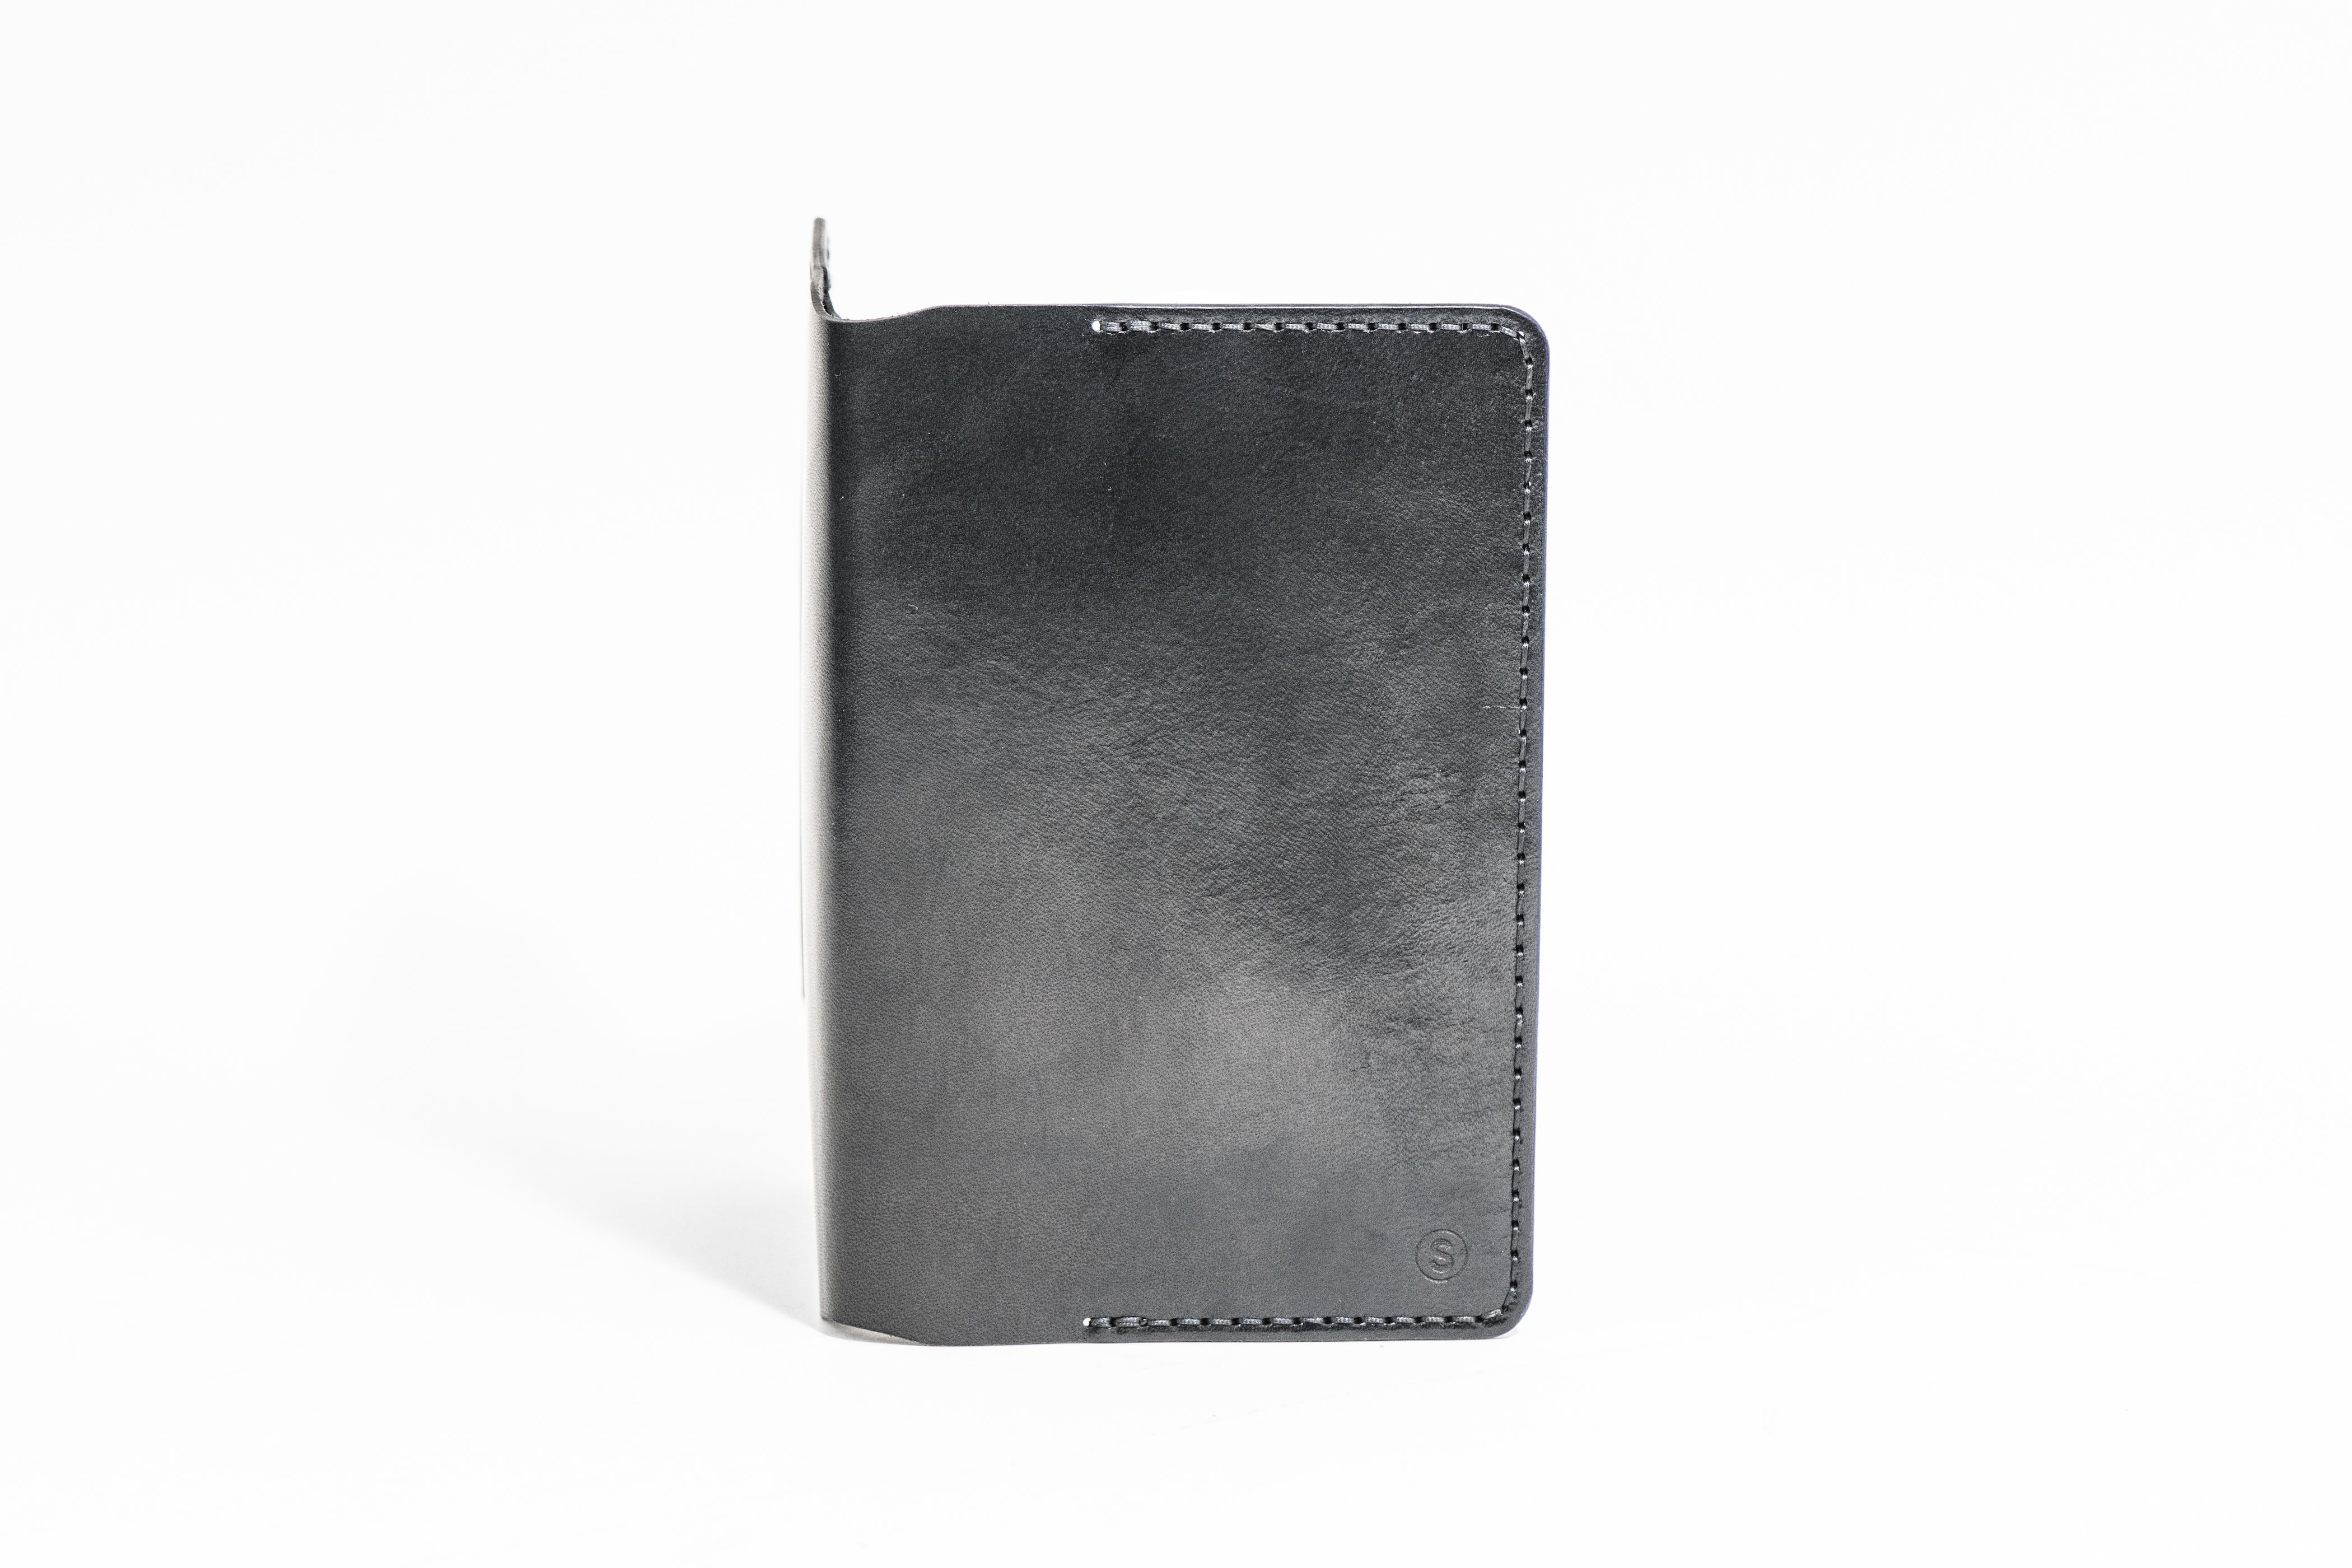 Pocket Notebook Cover : Black